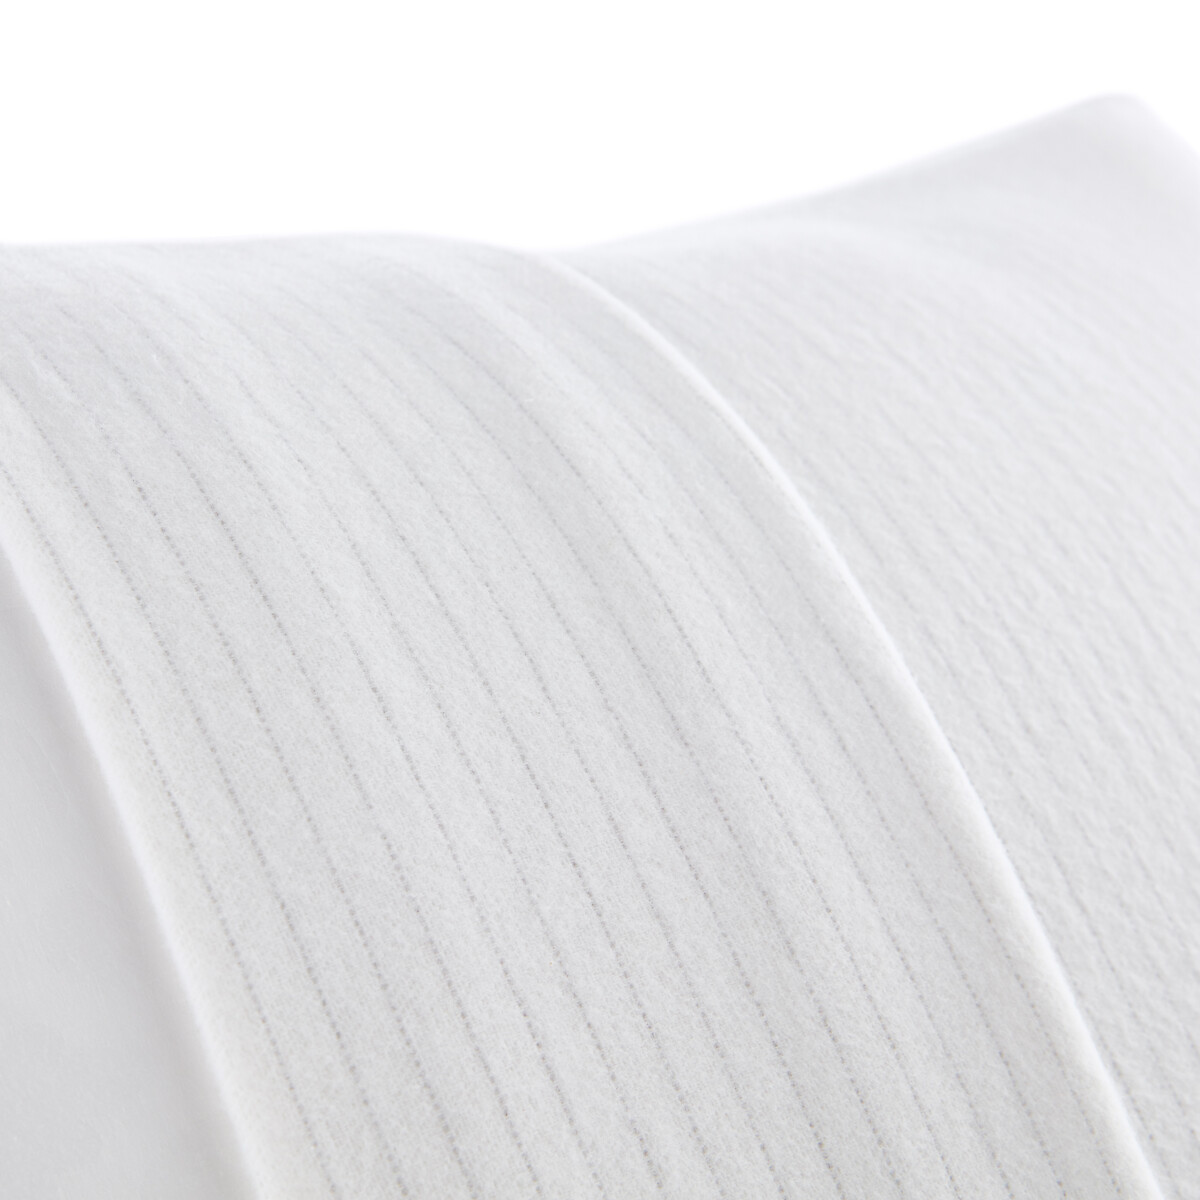 Чехол La Redoute Защитный на подушку из мольтона 50 x 70 см белый, размер 50 x 70 см - фото 2